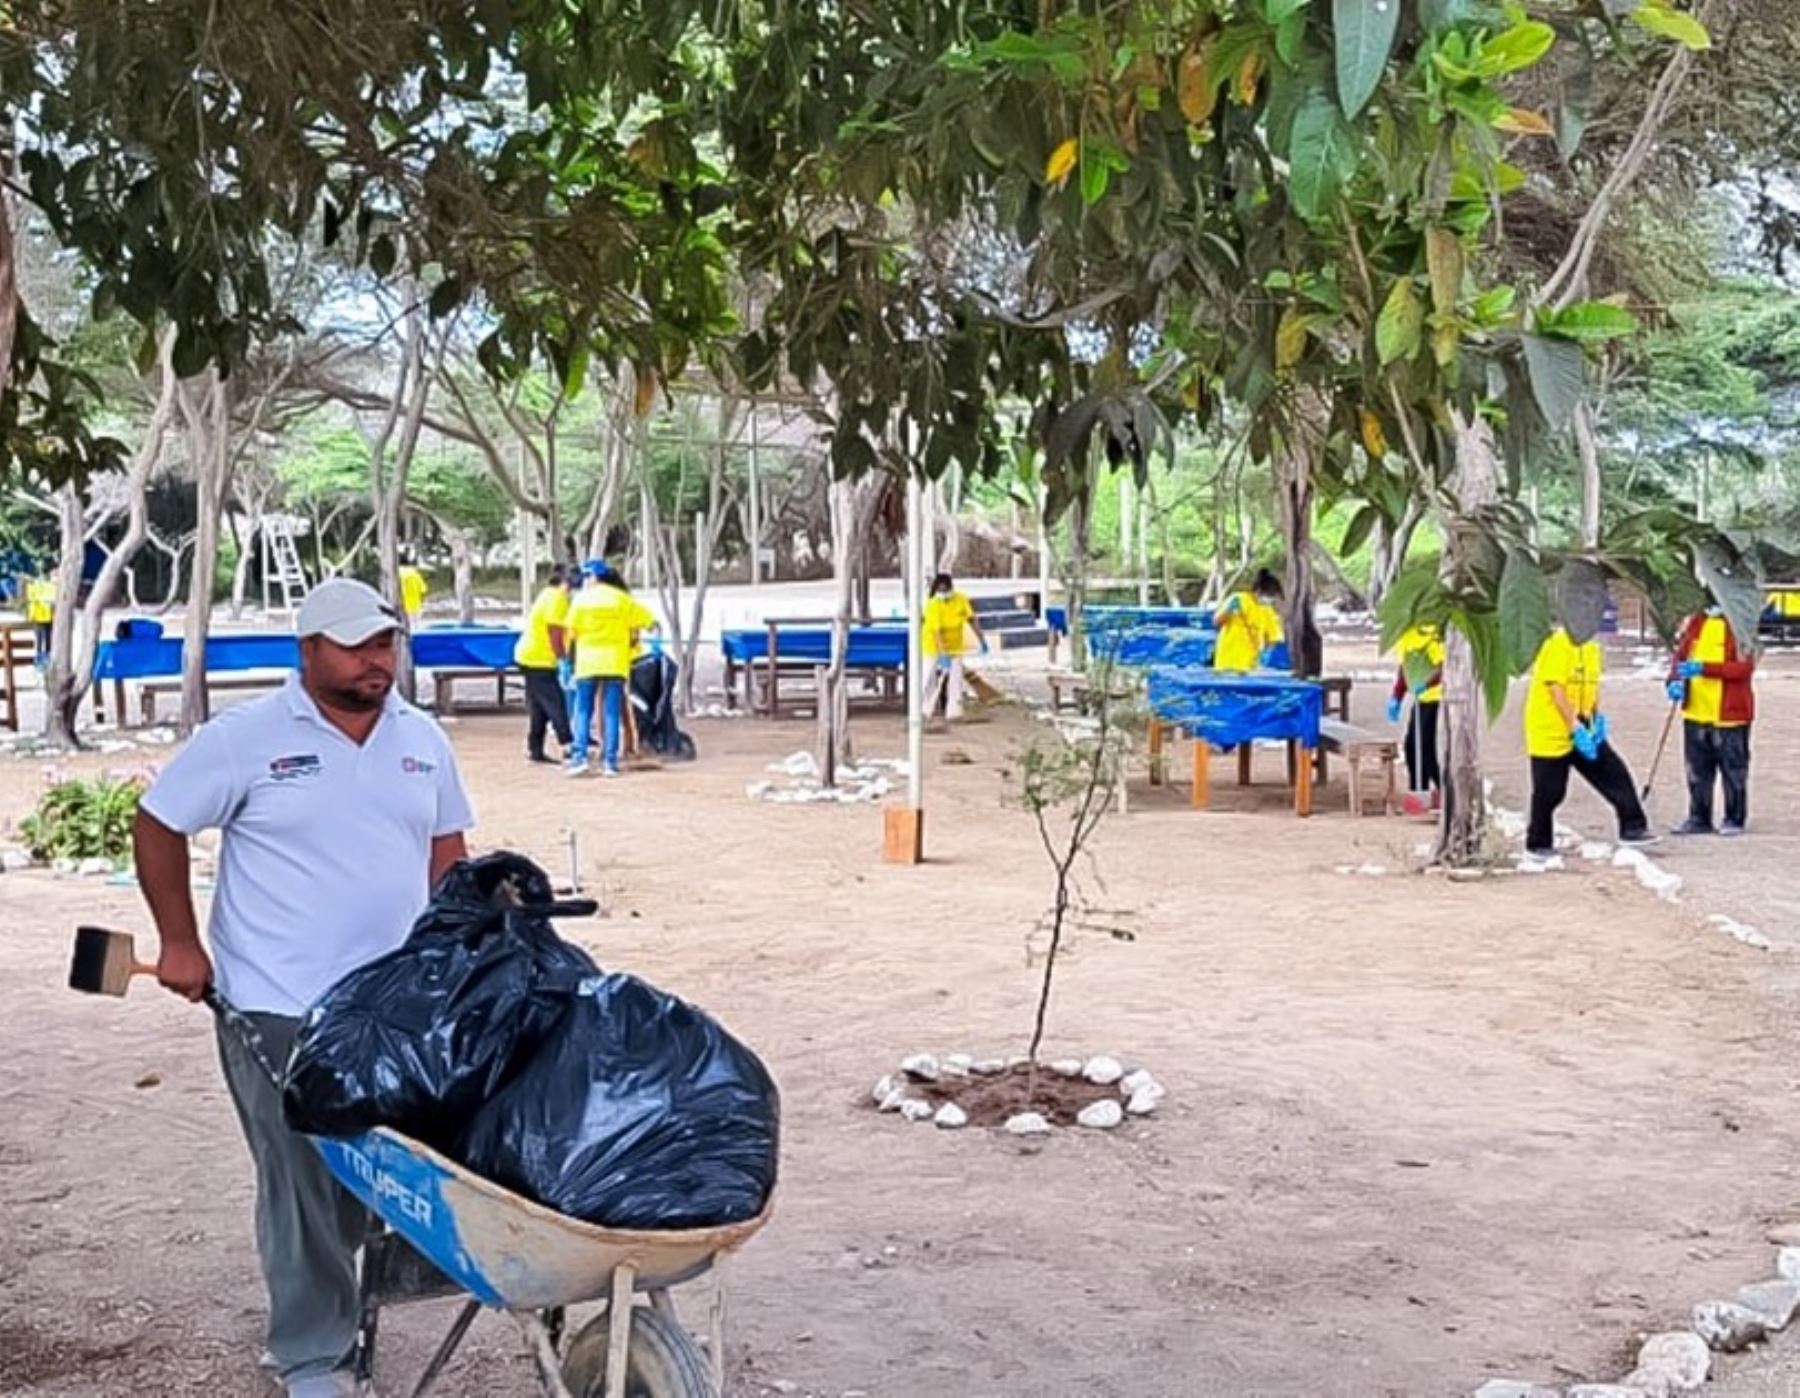 Voluntarios participaron de jornada de limpieza en alrededores del museo de sitio Chan Chan, ubicado en la provincia de Trujillo. ANDINA/Difusión